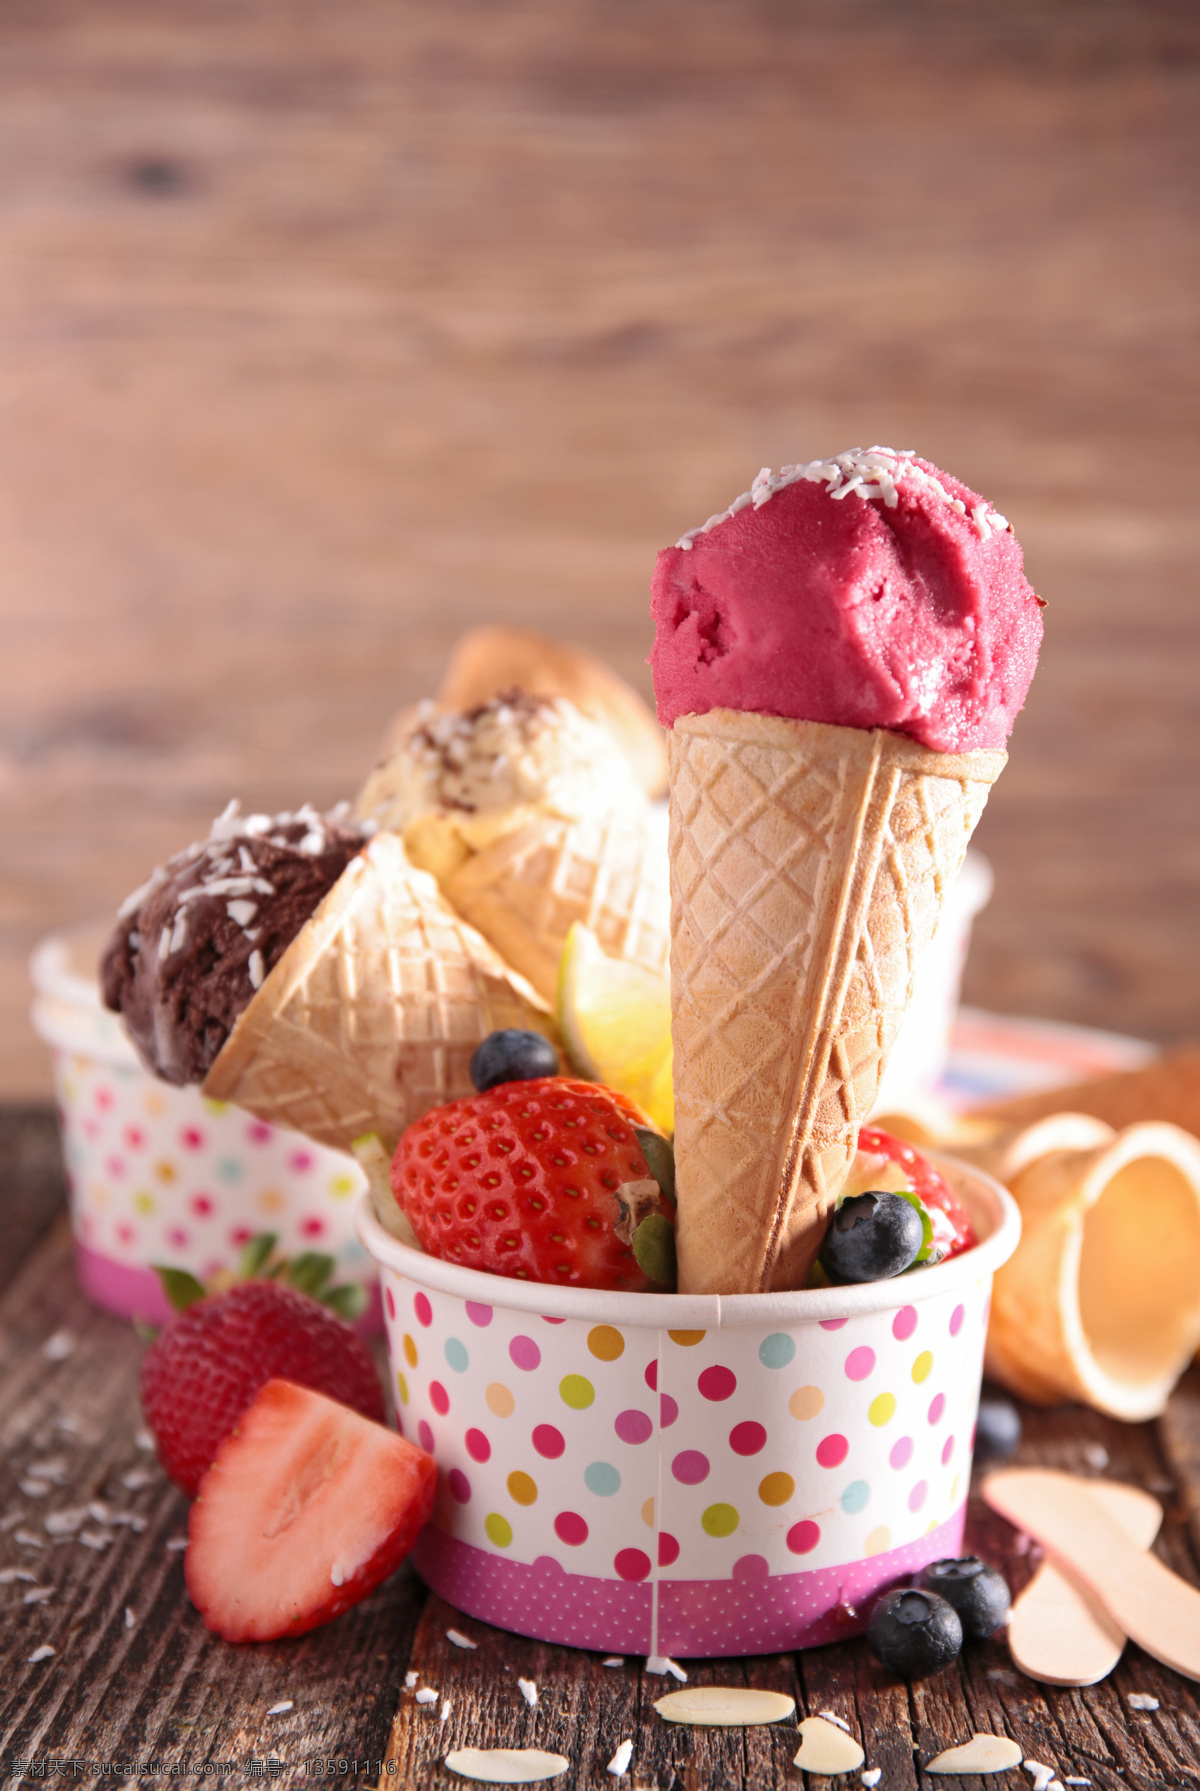 蓝莓 冰淇淋 甜筒 草莓 冰激凌 甜品美食 美味 食物摄影 水果 其他类别 餐饮美食 白色